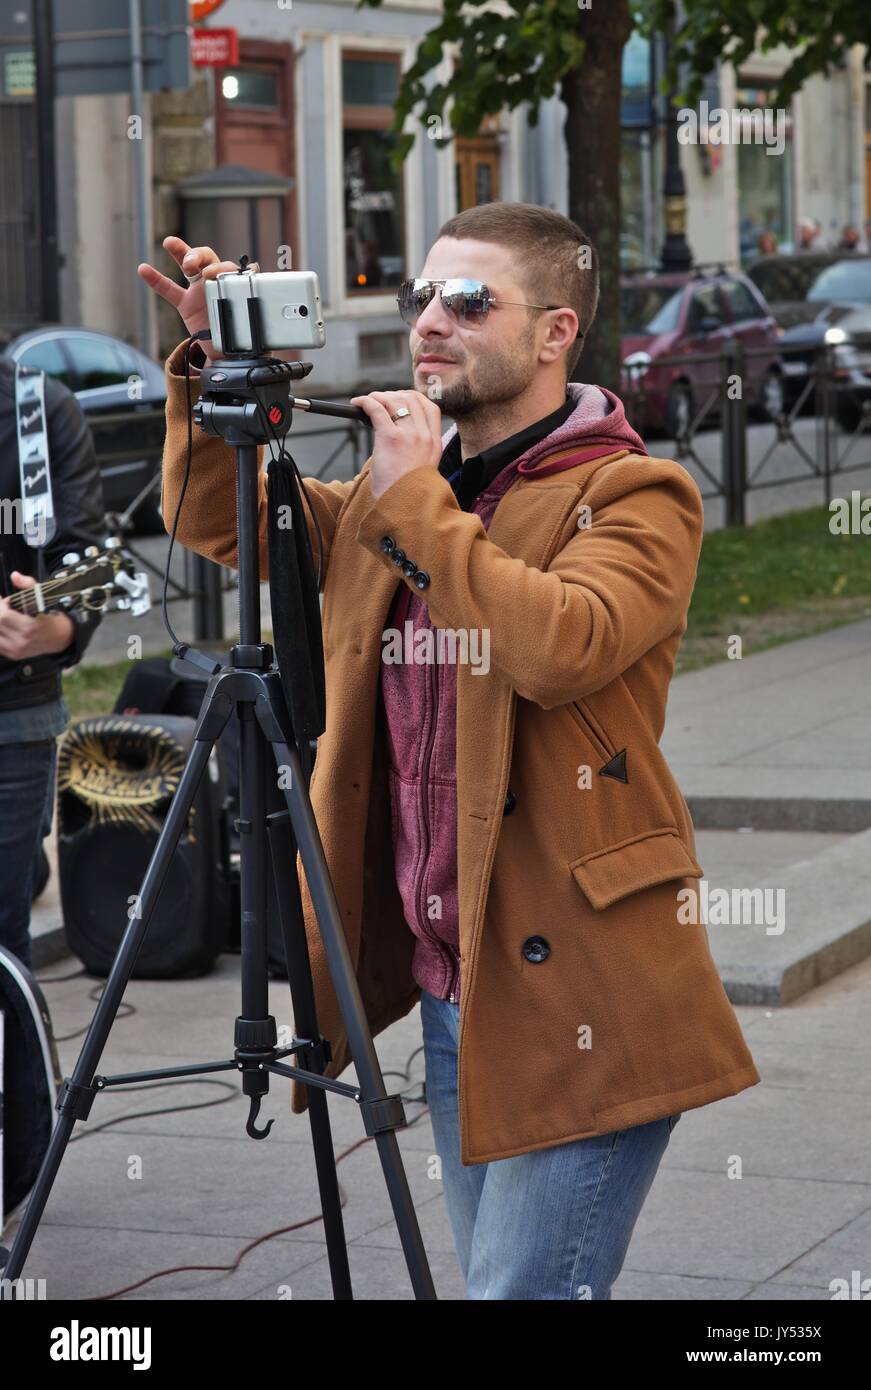 El hombre de la calle filmando a un grupo de música Foto de stock